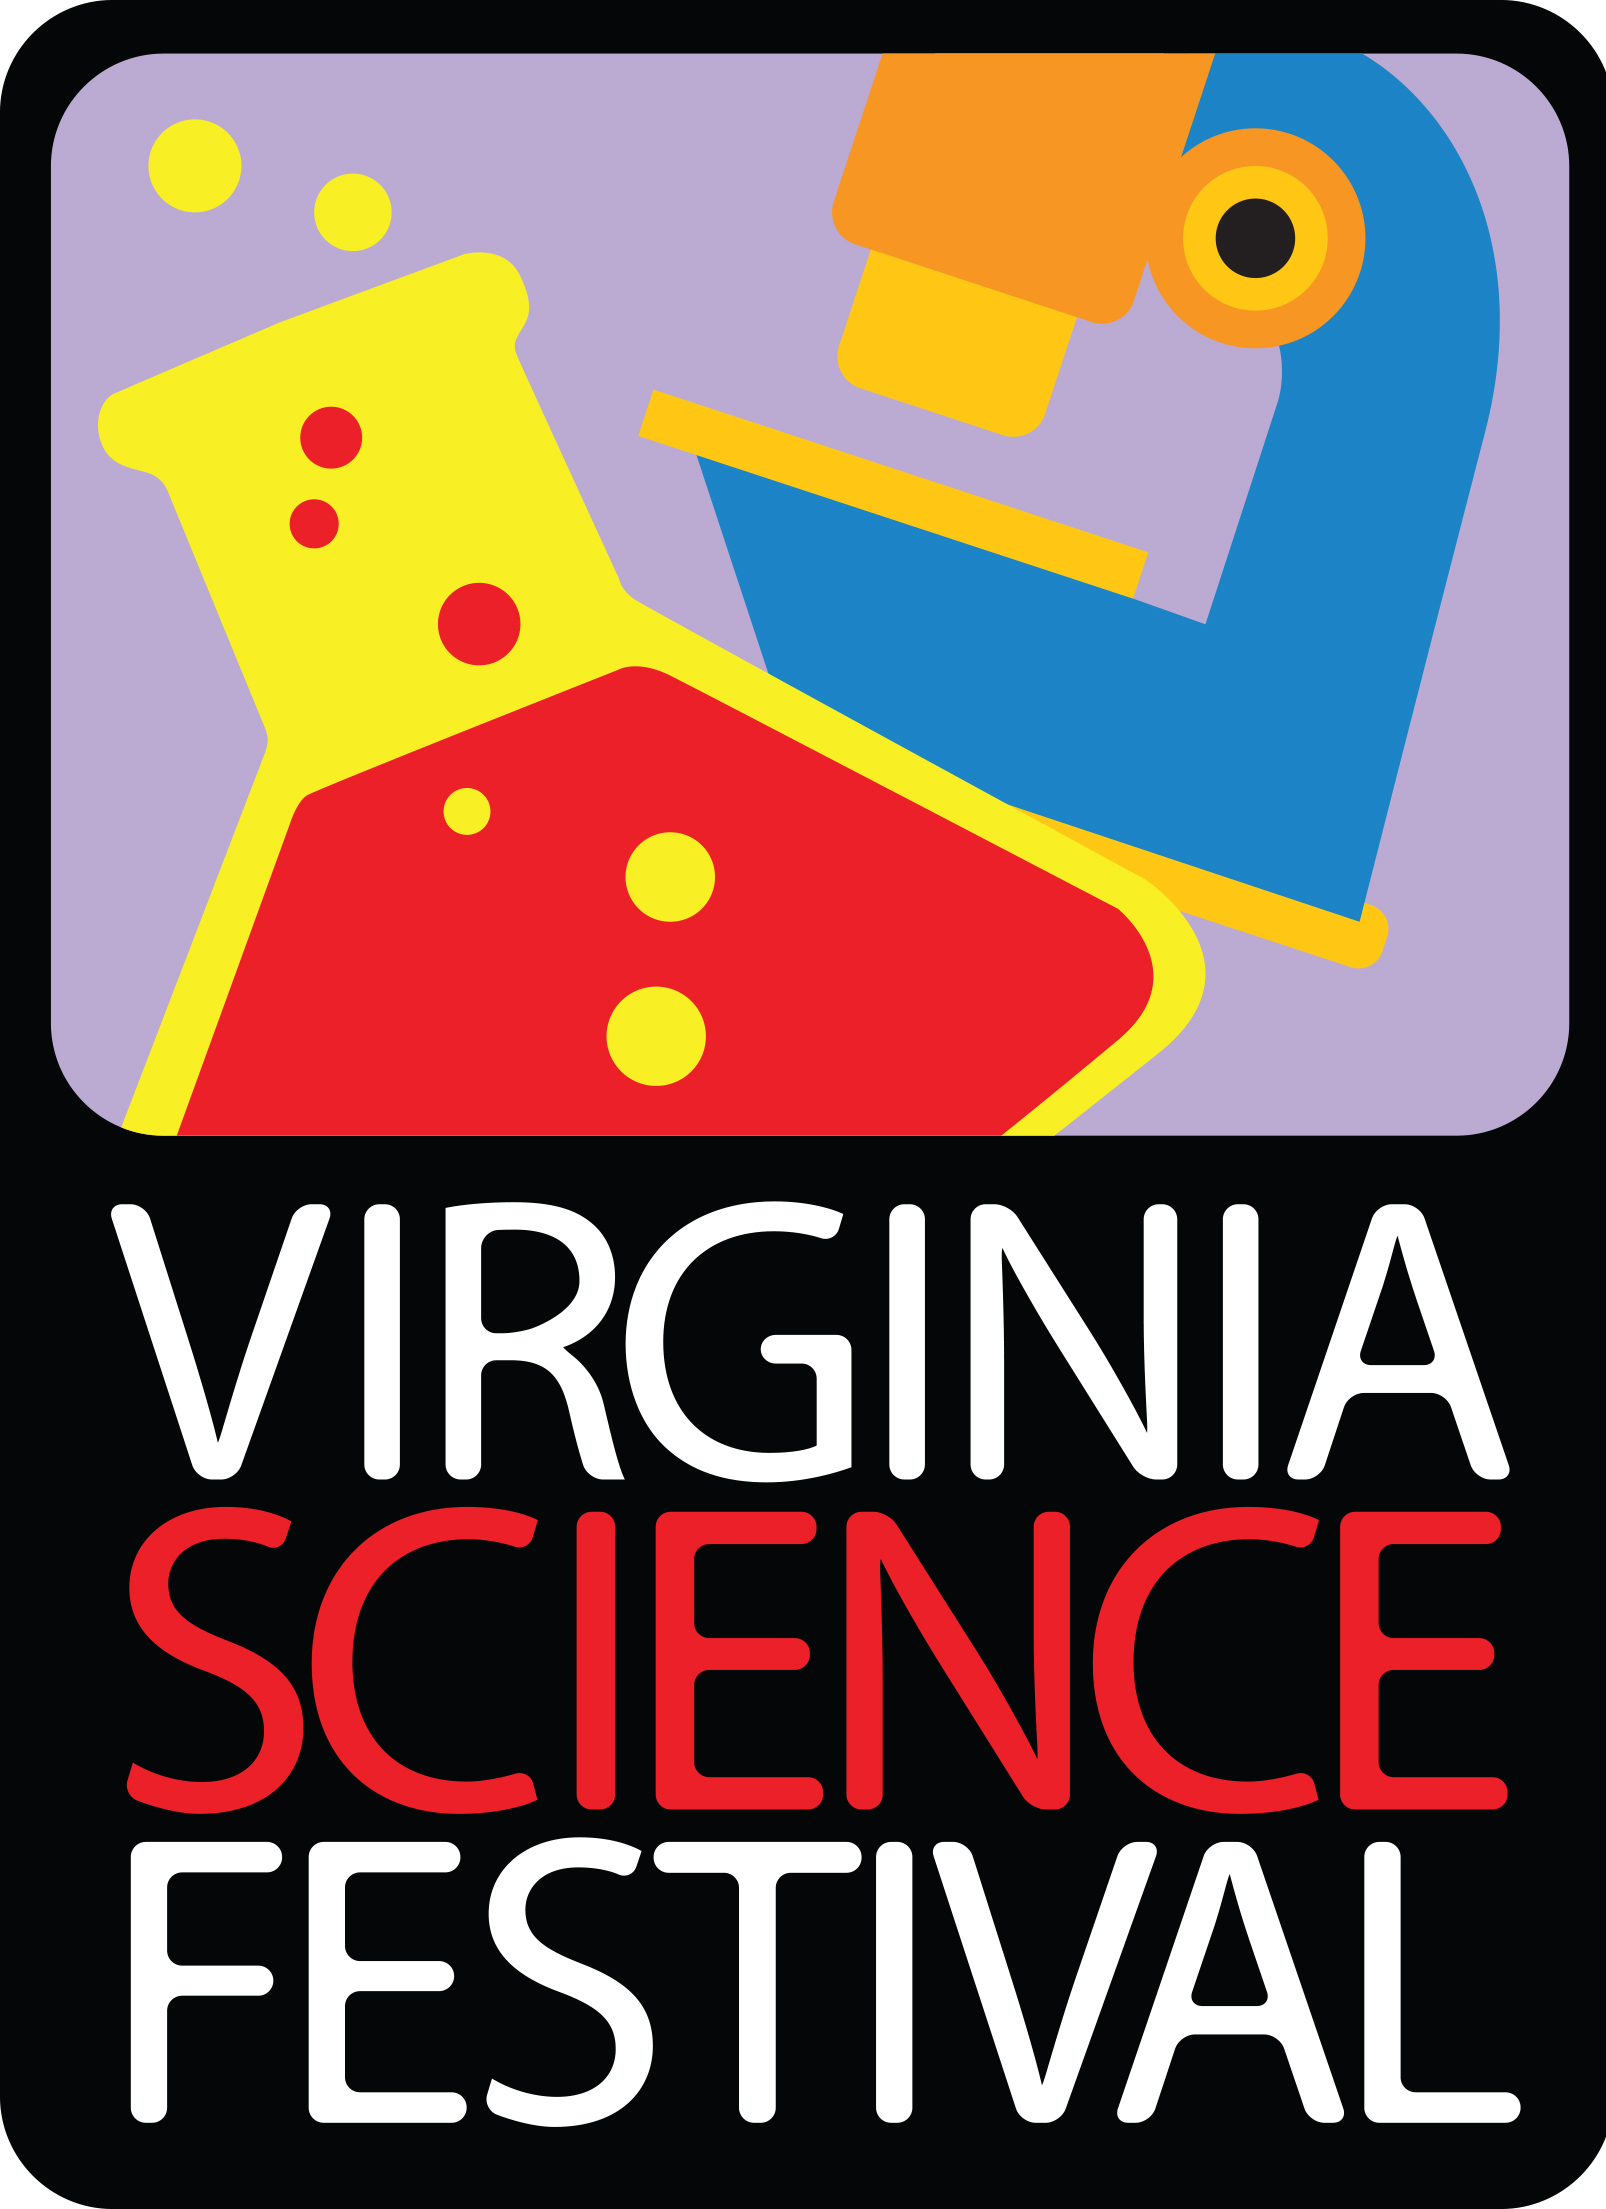 Virginia Science Festival Oct. 4-11